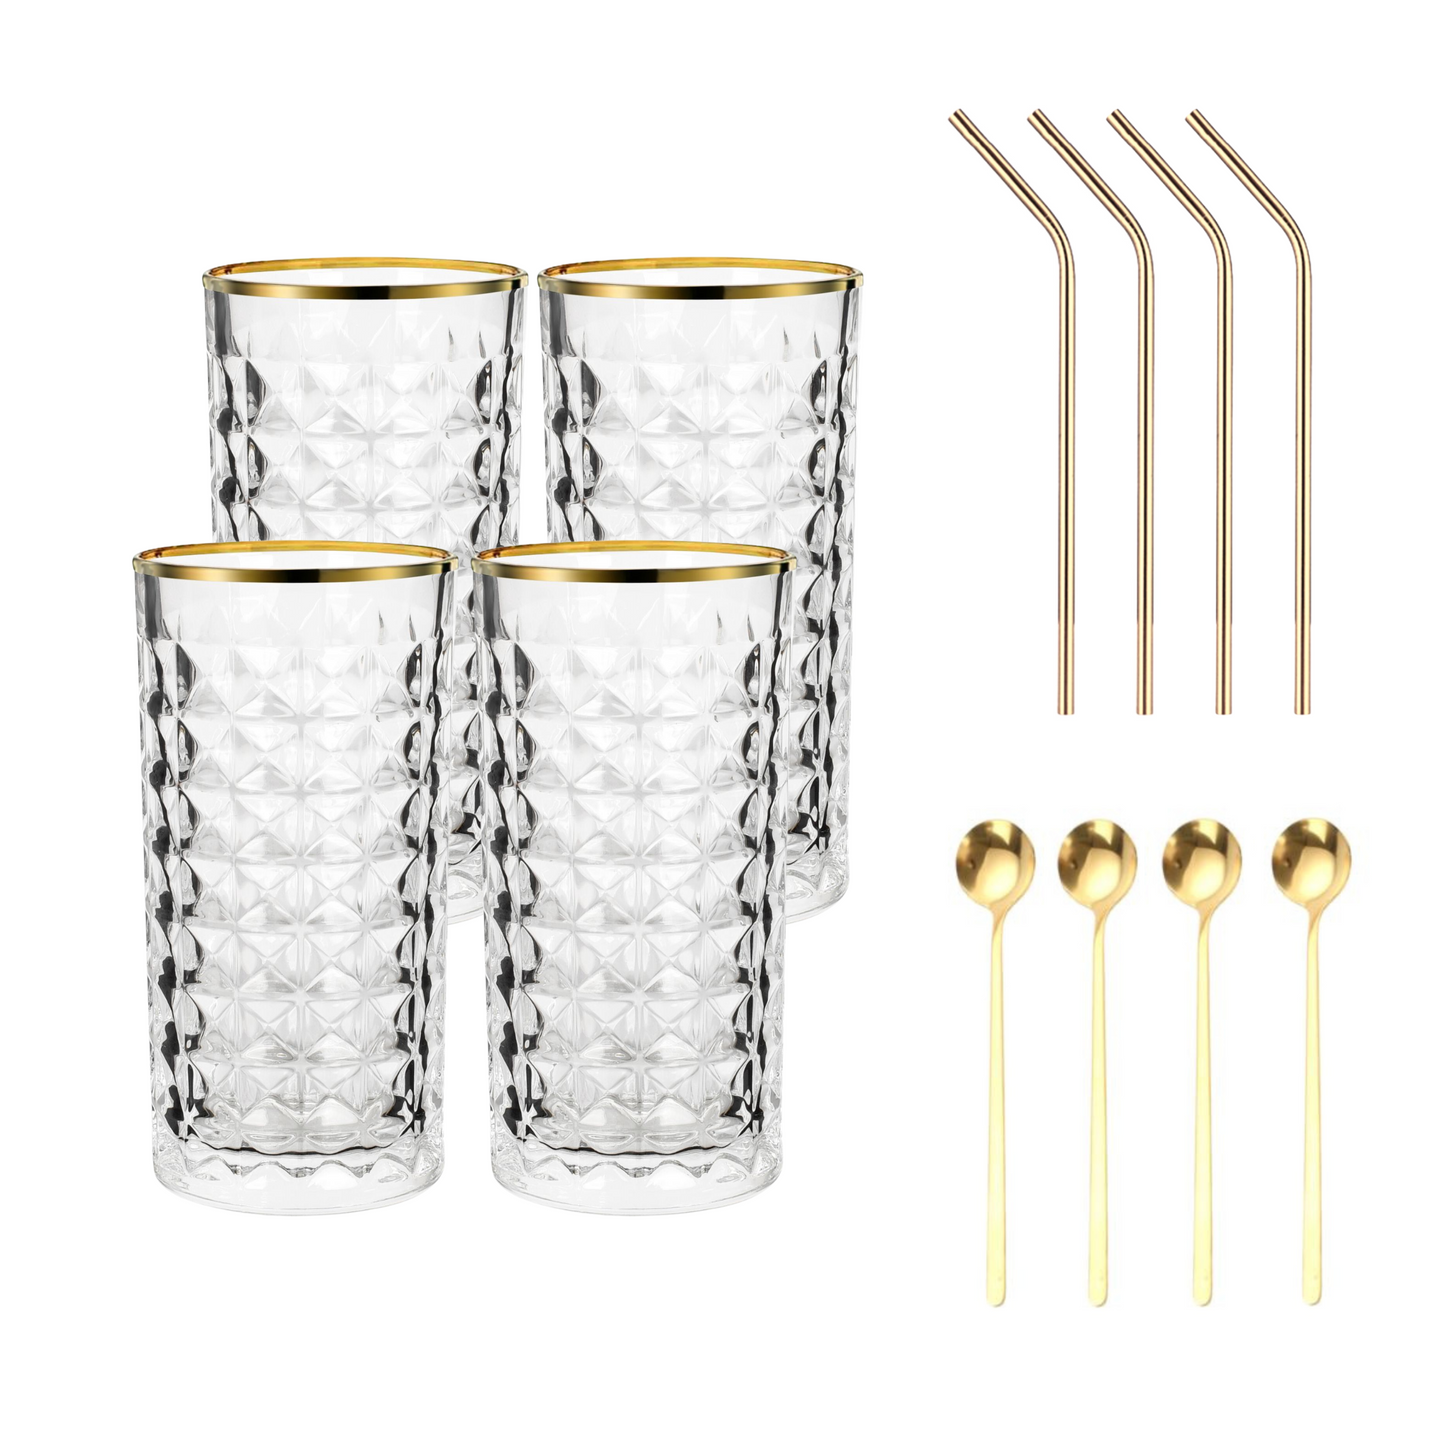 Set Luxus Kristall Latte Macchiato Gläser mit Goldrand 330ml Trinkgläser 4er Set "Luxe" mit goldenen Latte Macchiato Löffeln und goldenen Strohhalmen aus Edelstahl